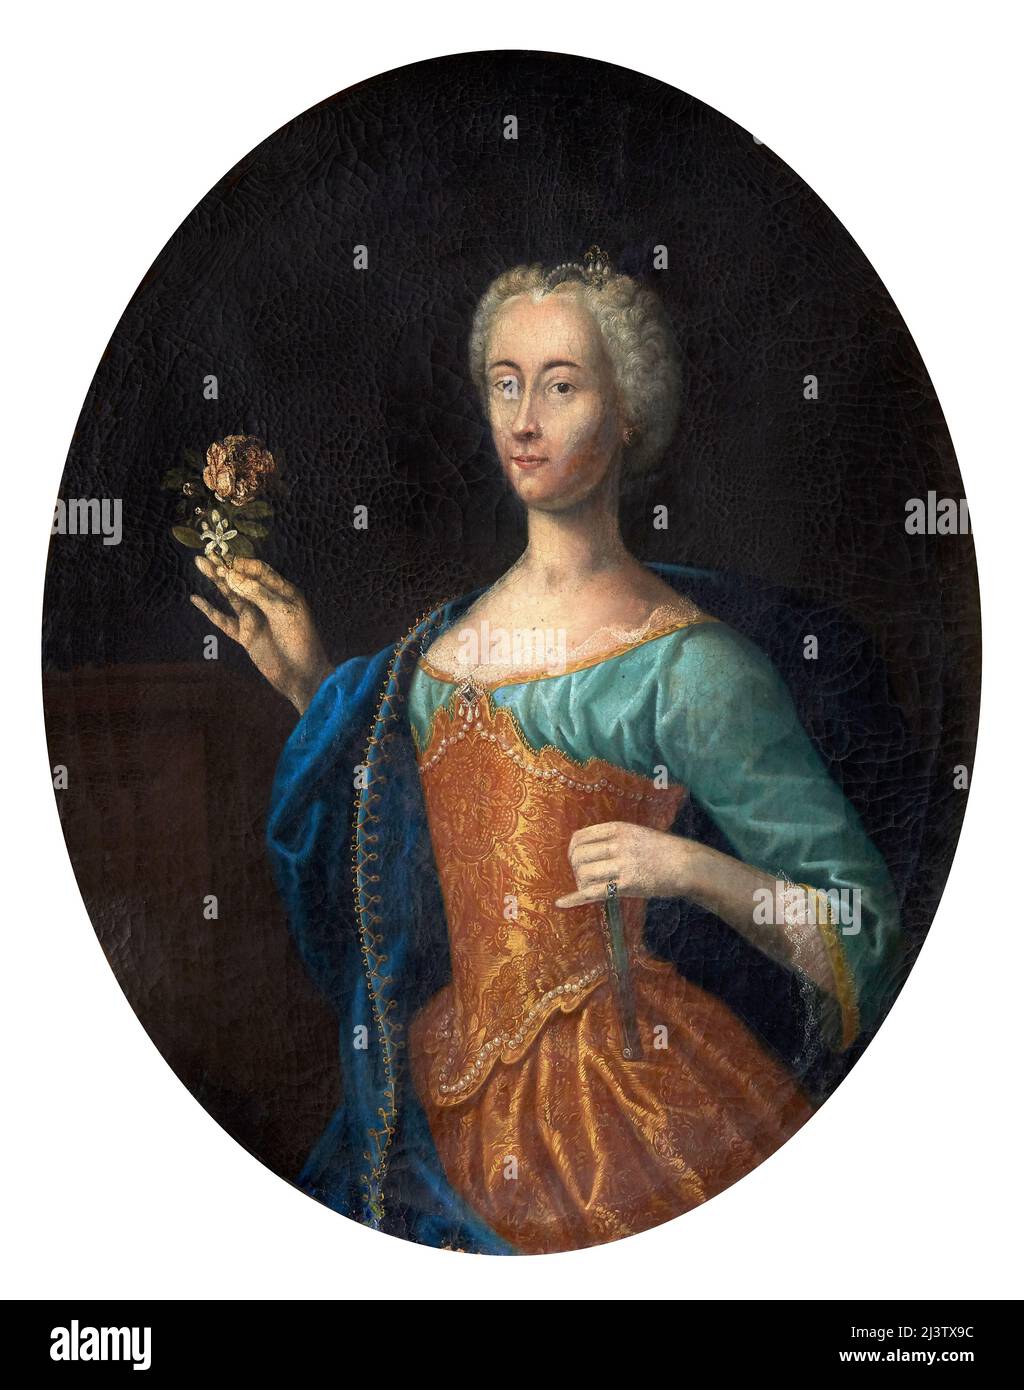 Porträt von Margherita von ’Este - Öl auf Leinwand - emilianische Malerin des Endes des 17.. Jahrhunderts - Guastalla (Re), Italien, Herzogspalast, Bild Gall Stockfoto